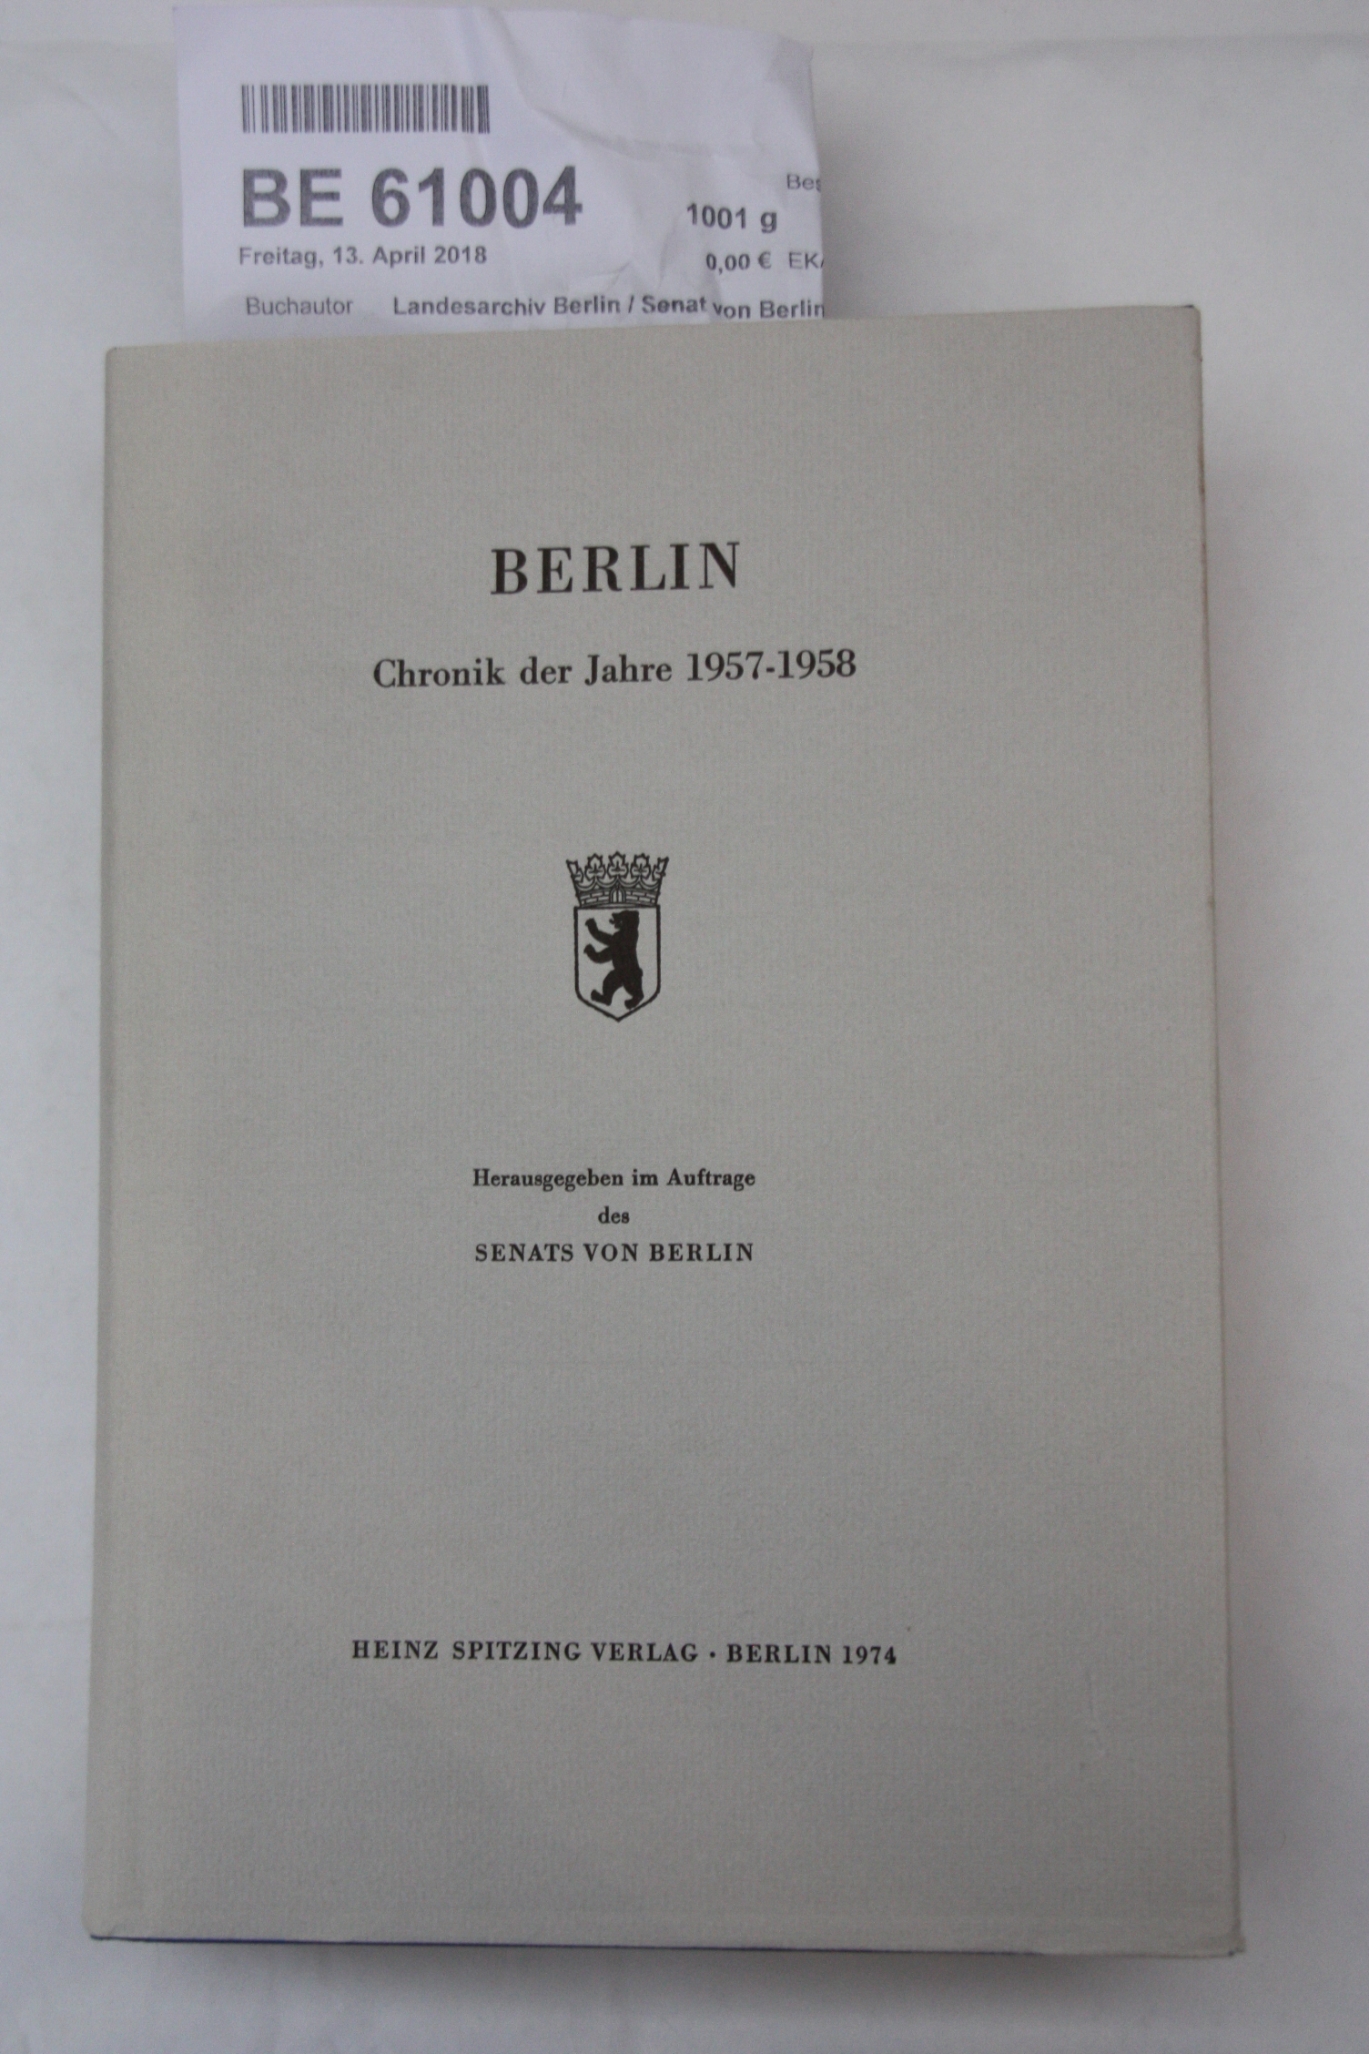 Landesarchiv Berlin / Senat von Berlin: Berlin Chronik der Jahre 1957-1958